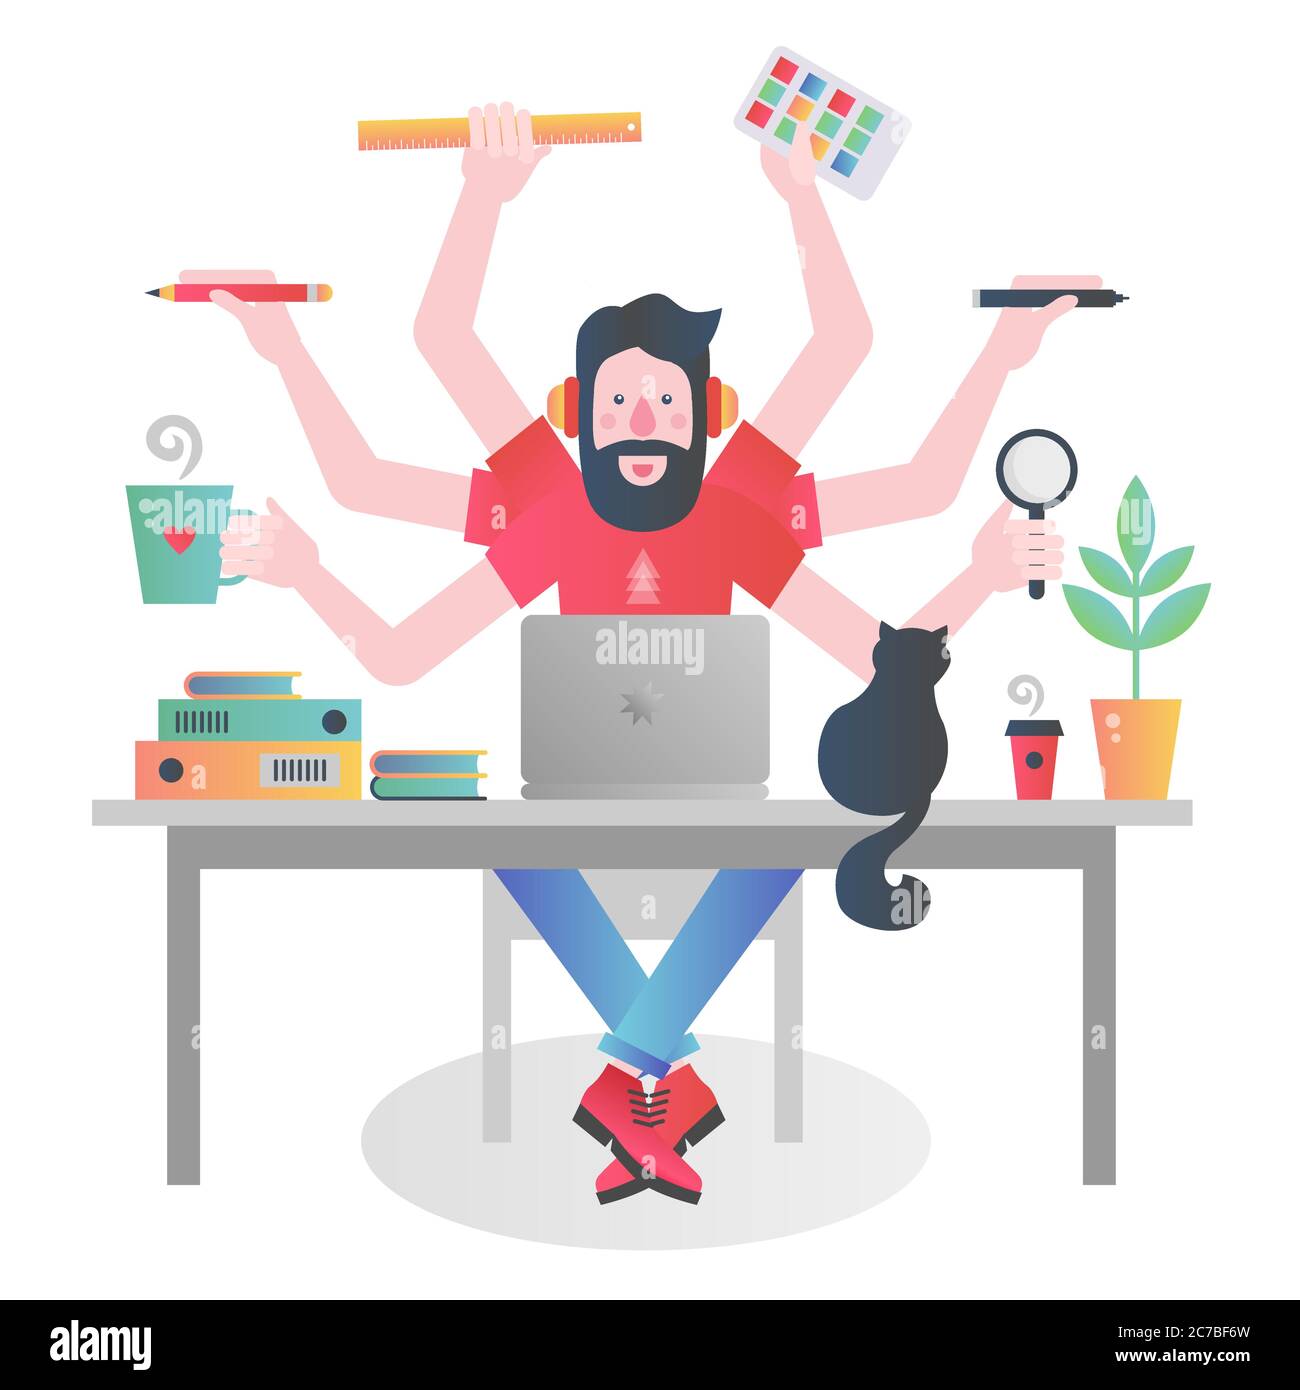 Farbenfroher Charakter des Mannes mit vielen Händen halten verschiedene Dinge und Verwaltung der Zeit, während am Tisch mit Laptop arbeiten Stock Vektor